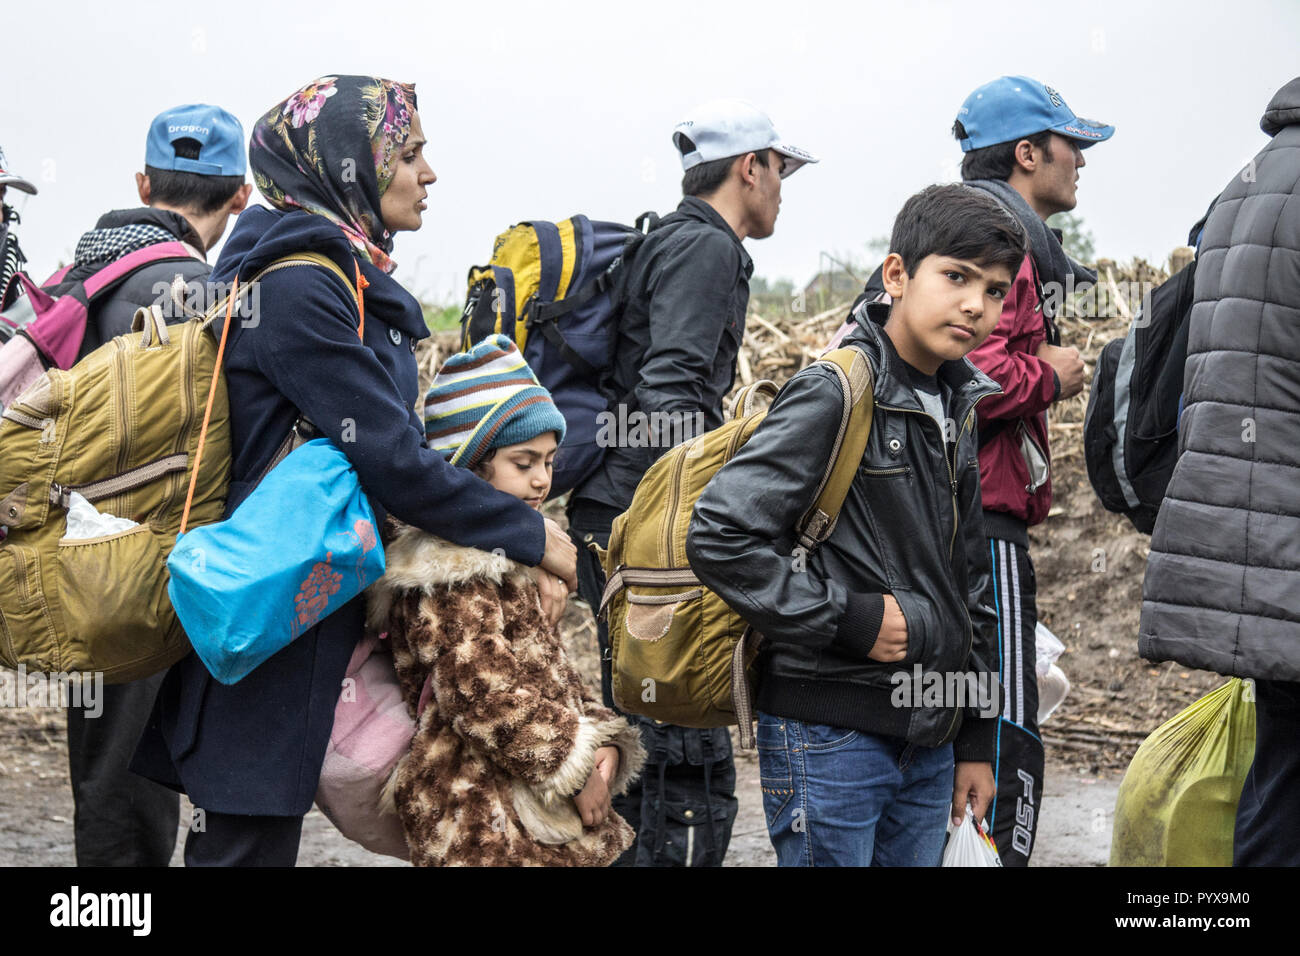 BERKASOVO, SERBIA - Octubre 17, 2015: el grupo de refugiados, principalmente niños, esperando para cruzar la frontera serbia de Croacia, entre las ciudades de Bapska y Foto de stock